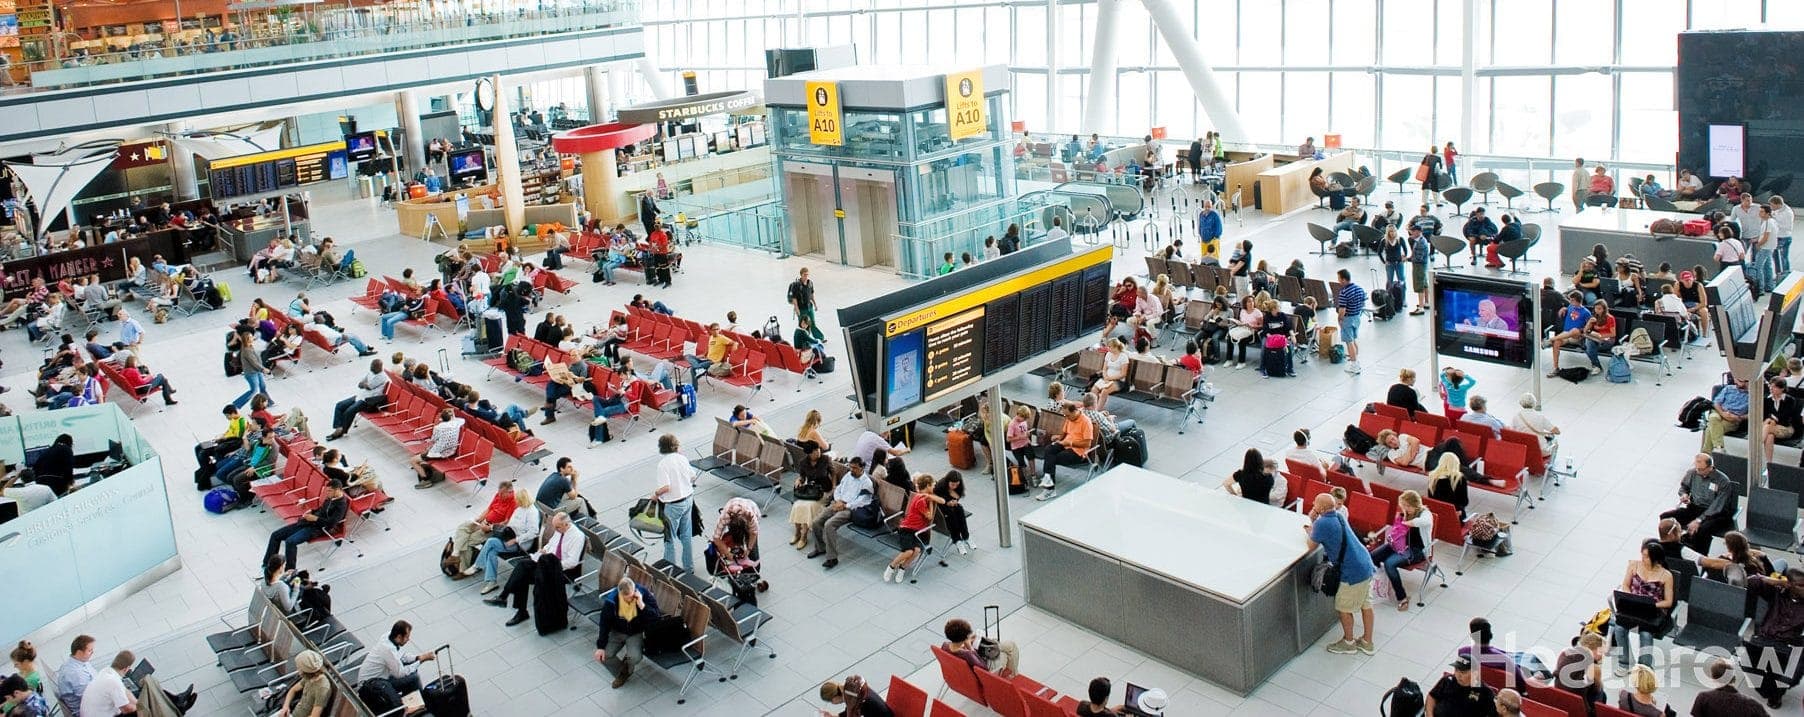 Imagen de la terminal 5 del aeropuerto de Heathrow